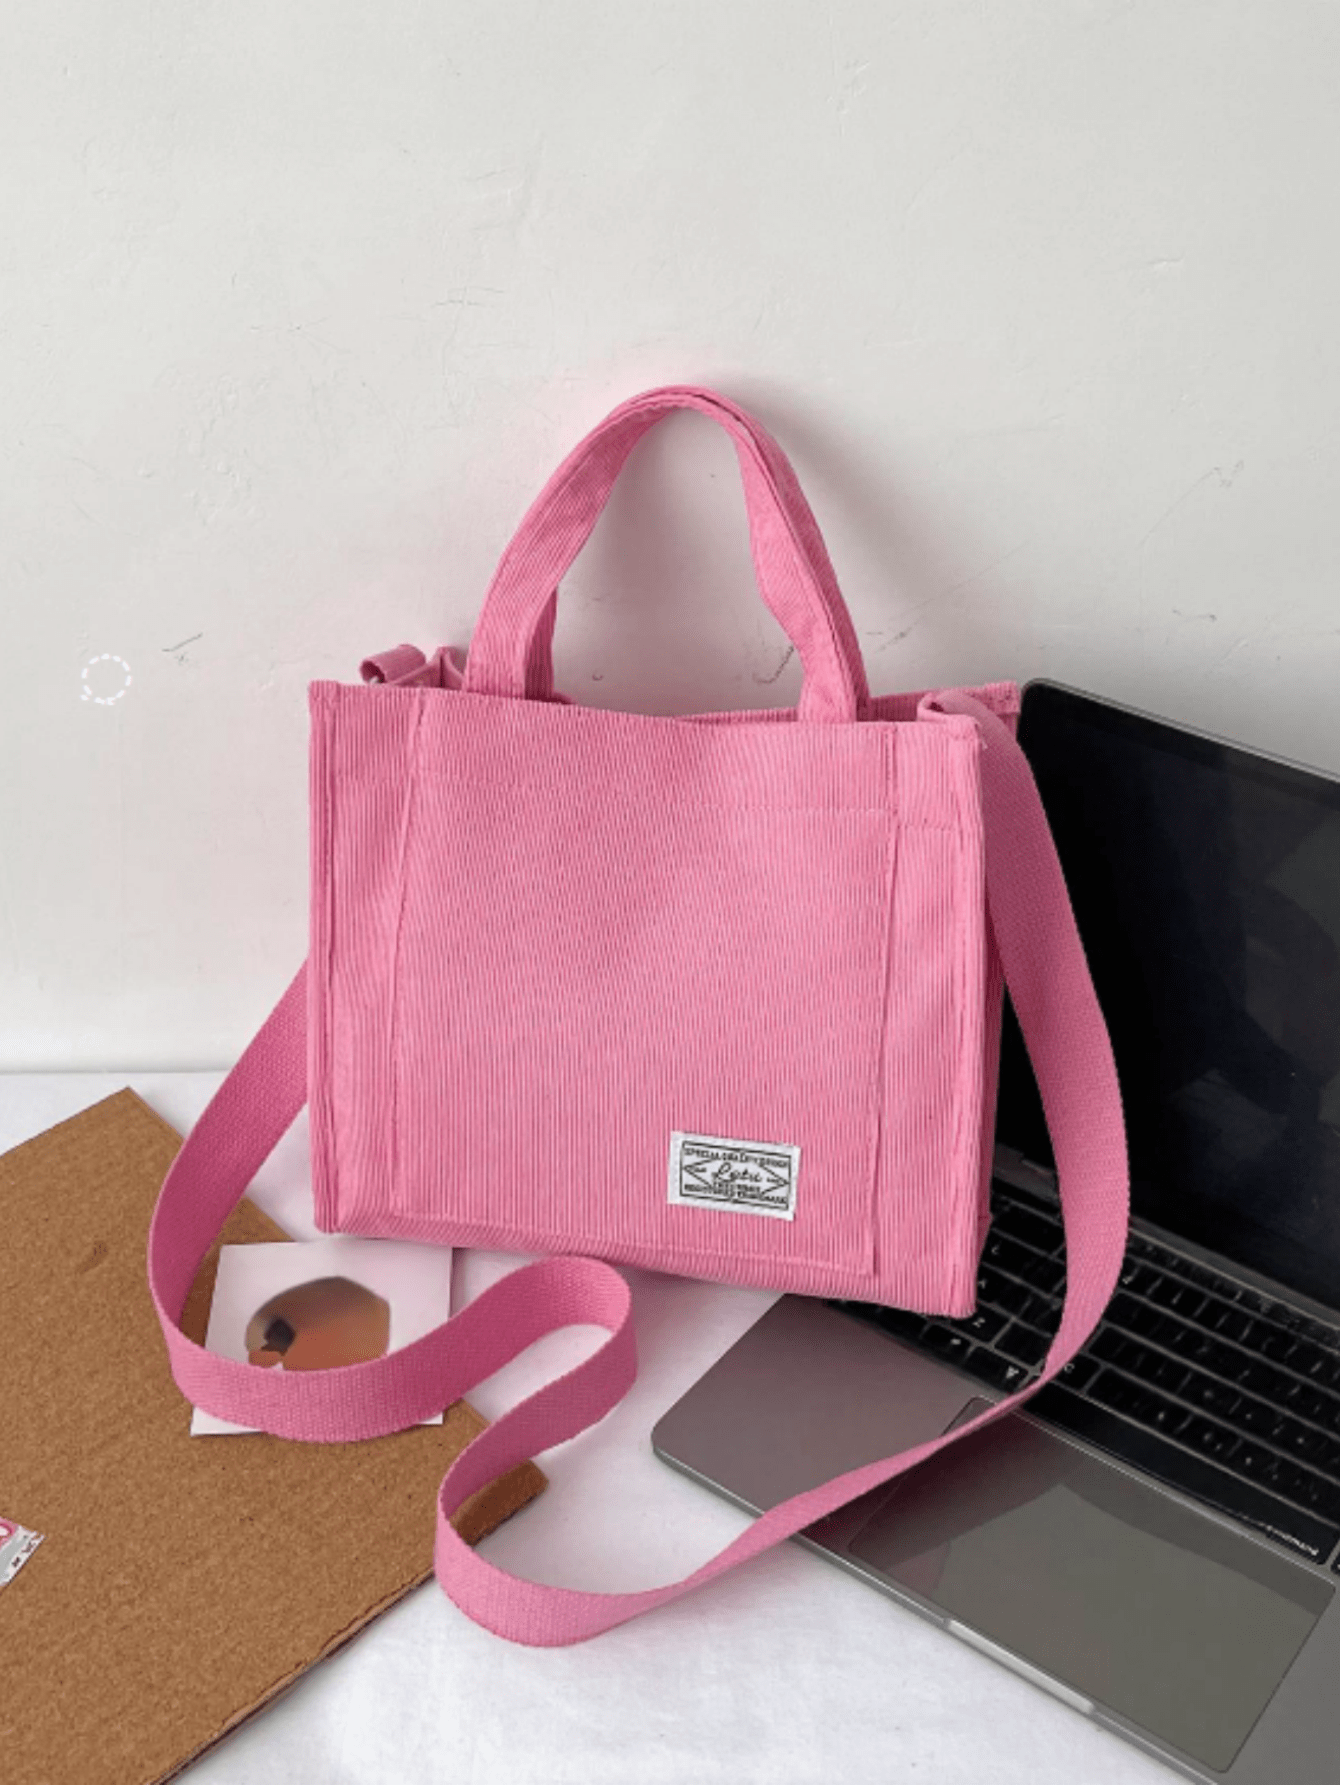 1 шт. однотонная розовая классическая и модная универсальная сумка, розовый женская сумка мессенджер кожаные сумки через плечо кошелек модная сумка на плечо женские сумки брендовый тест